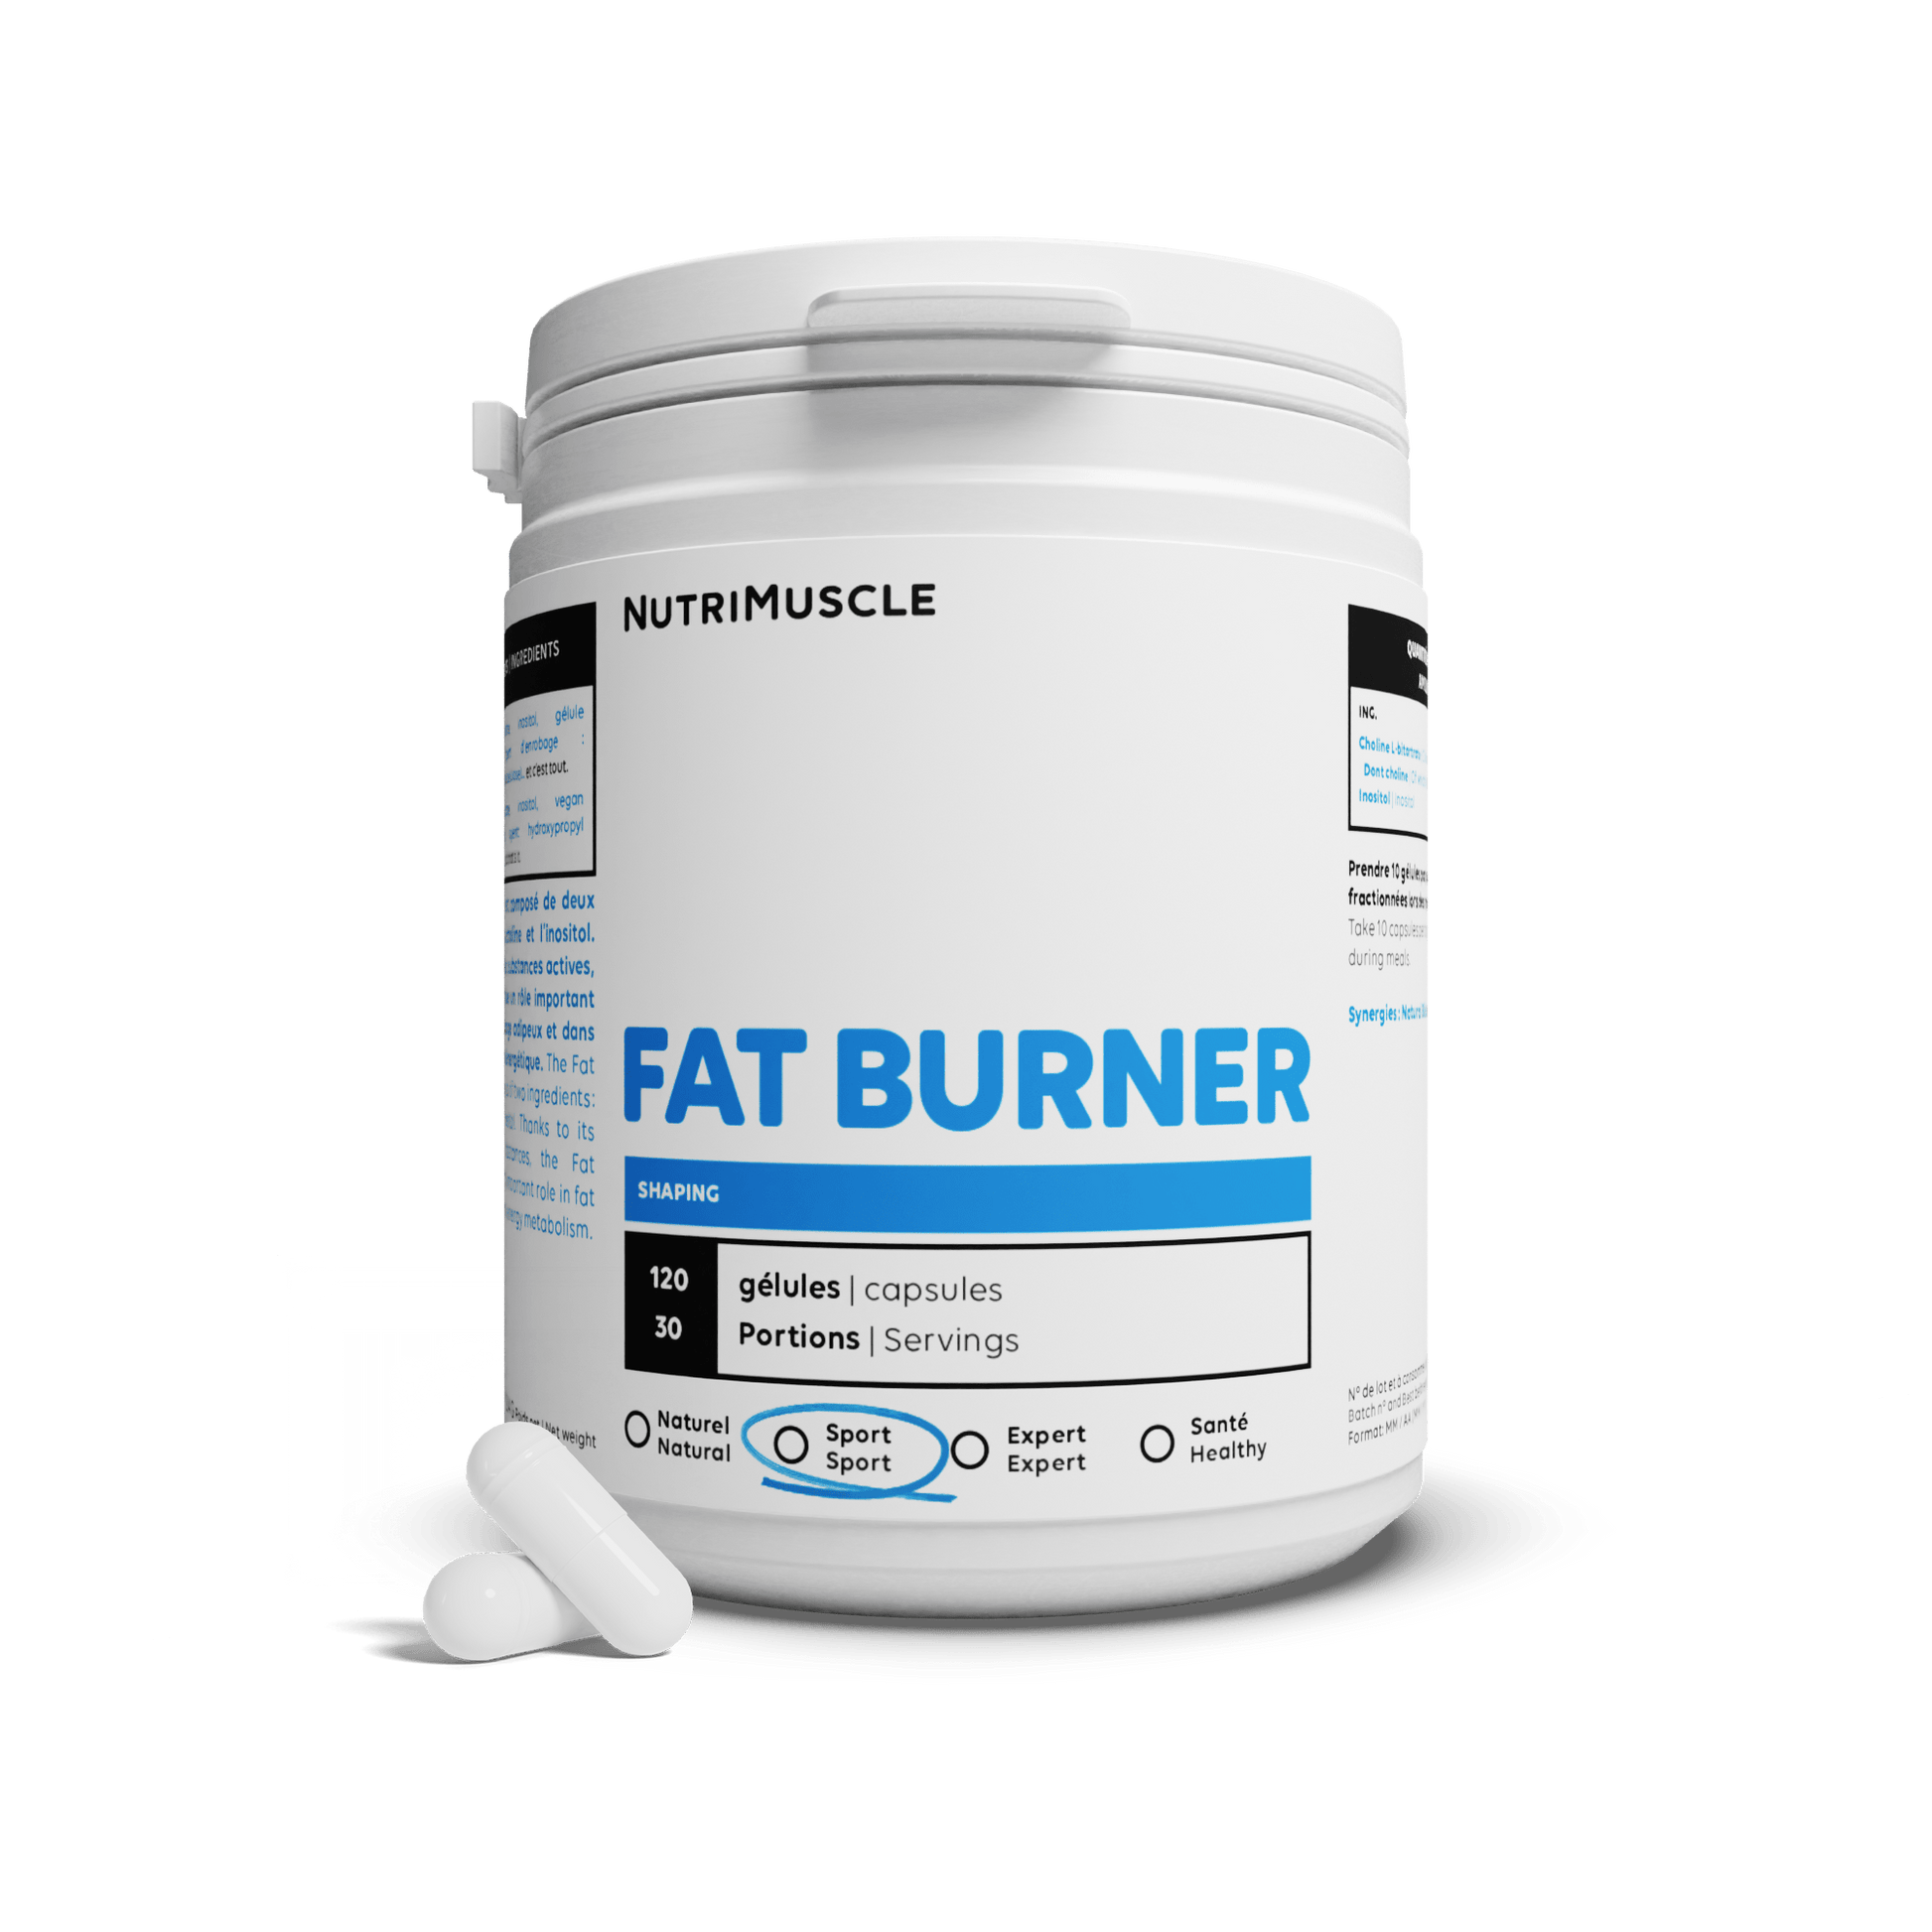 Nutrimuscle Nutriments 120 gélules Fat Burner